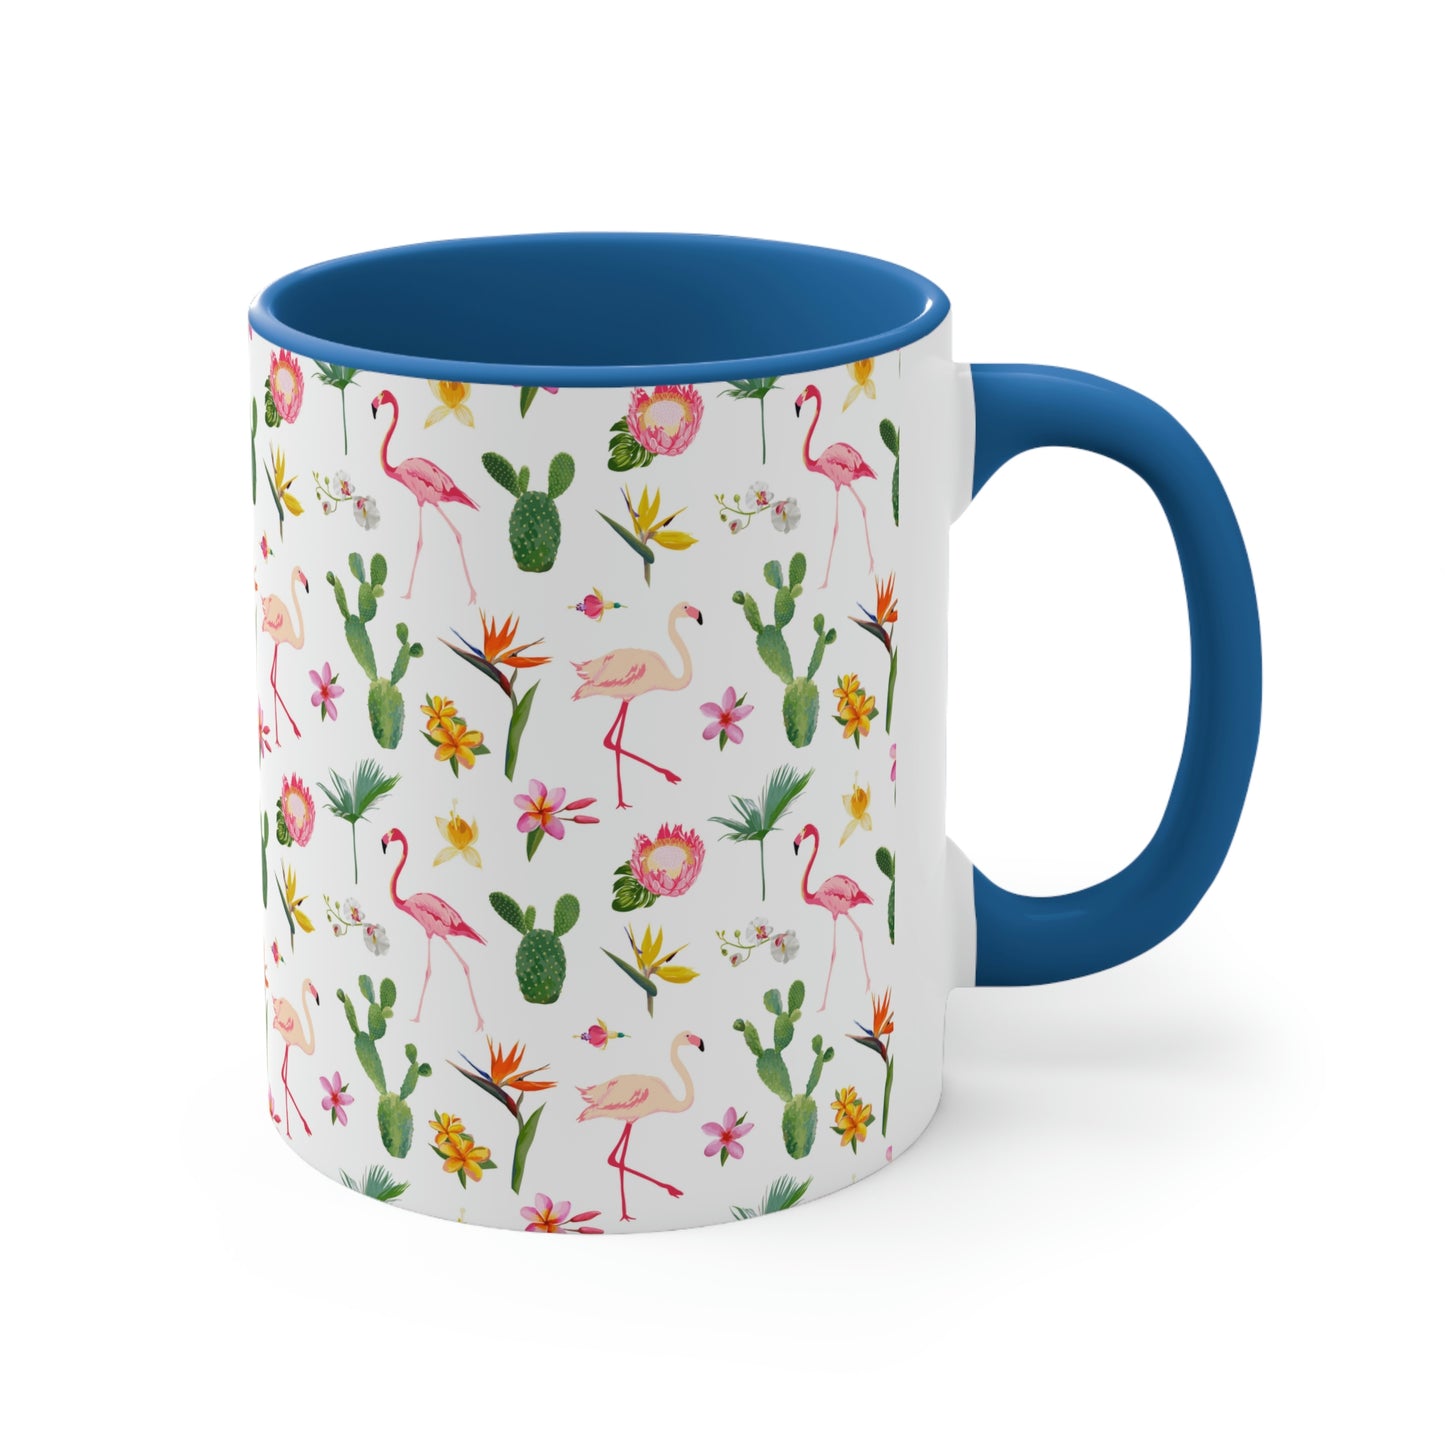 Cactus and Flamingos Accent Coffee Mug, 11oz